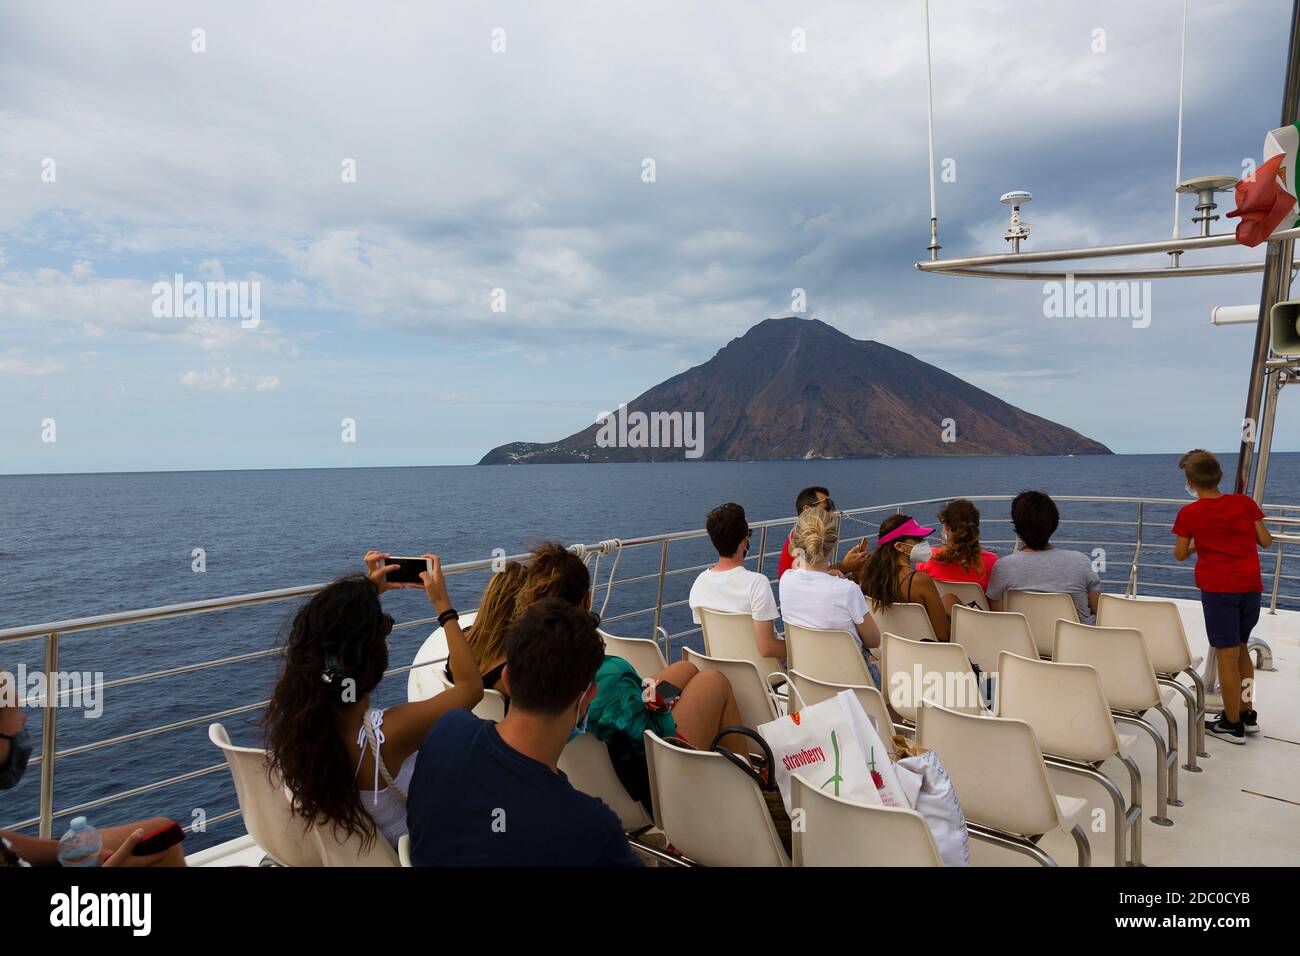 Sicilia, Italia. Los turistas en la cubierta de un barco turístico ver y tomar fotos de una pluma de humo que se levanta del volcán activo de Stromboli. Foto de stock